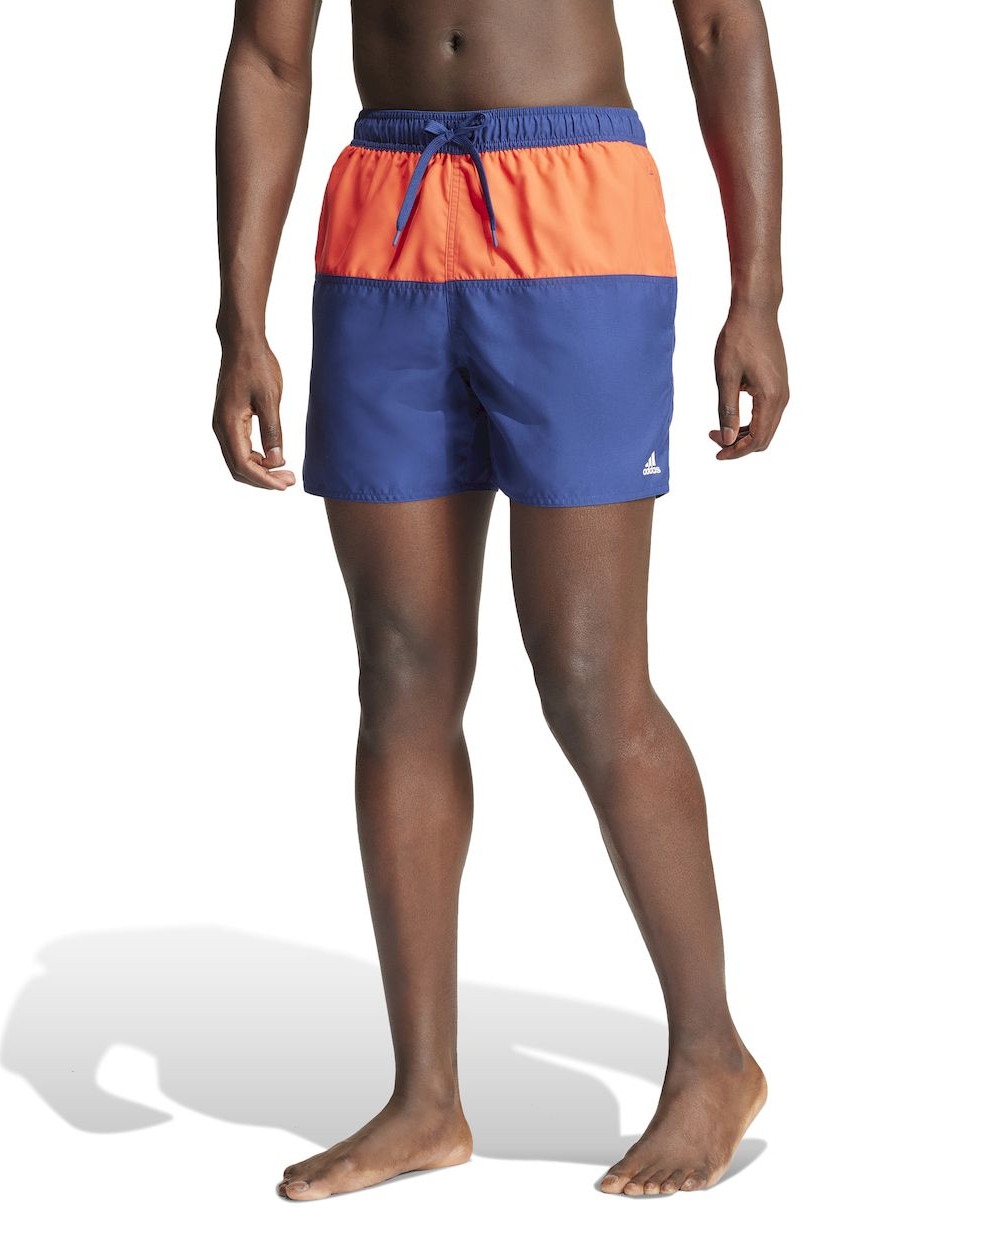  Costume da Bagno pantaloncini shorts UOMO Adidas Colorblock CLX Blu Arancione